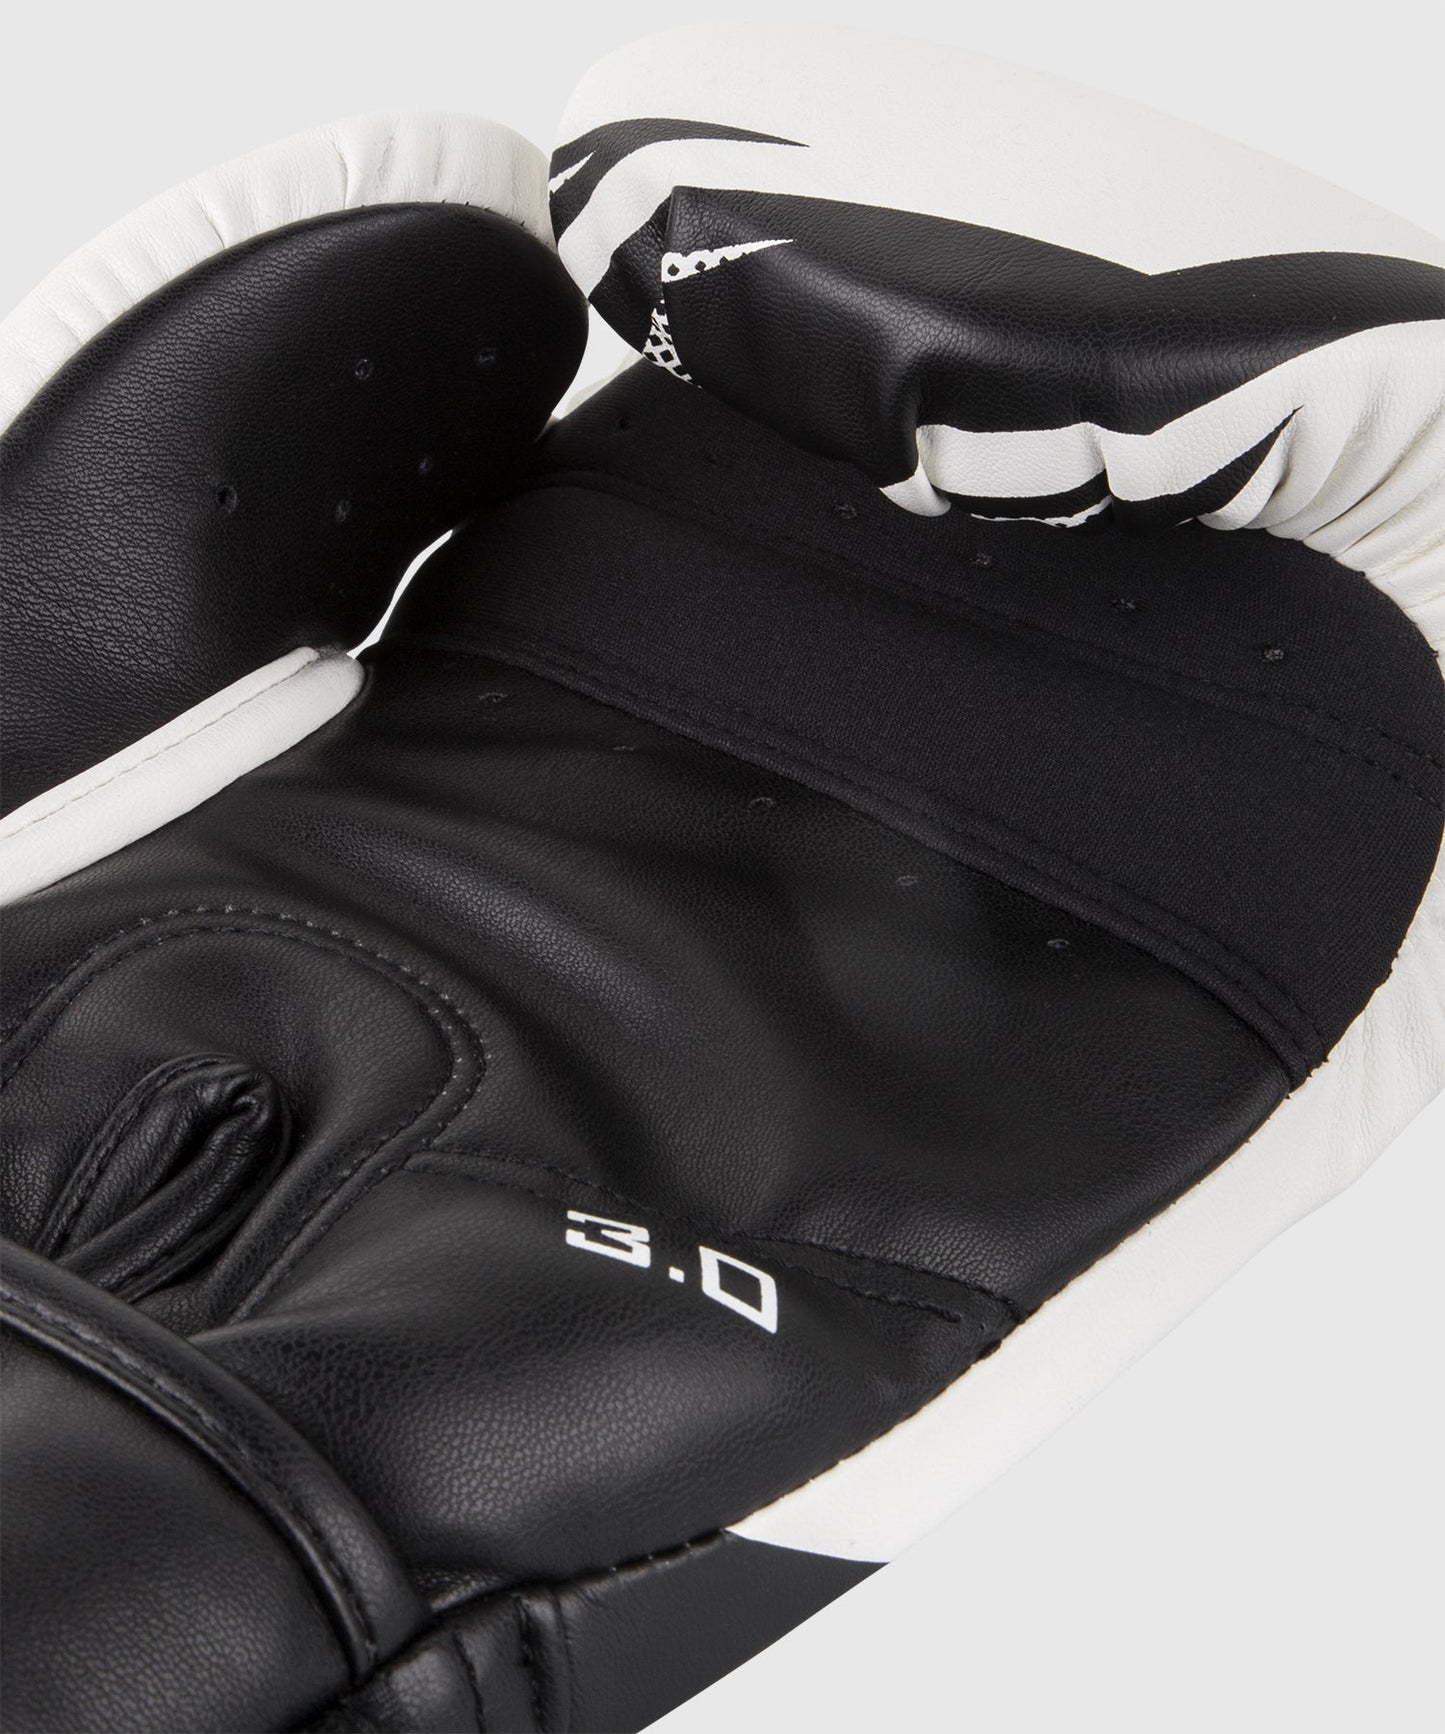 Gants de boxe Venum Challenger 3.0 avec poignet ajustable par velcro